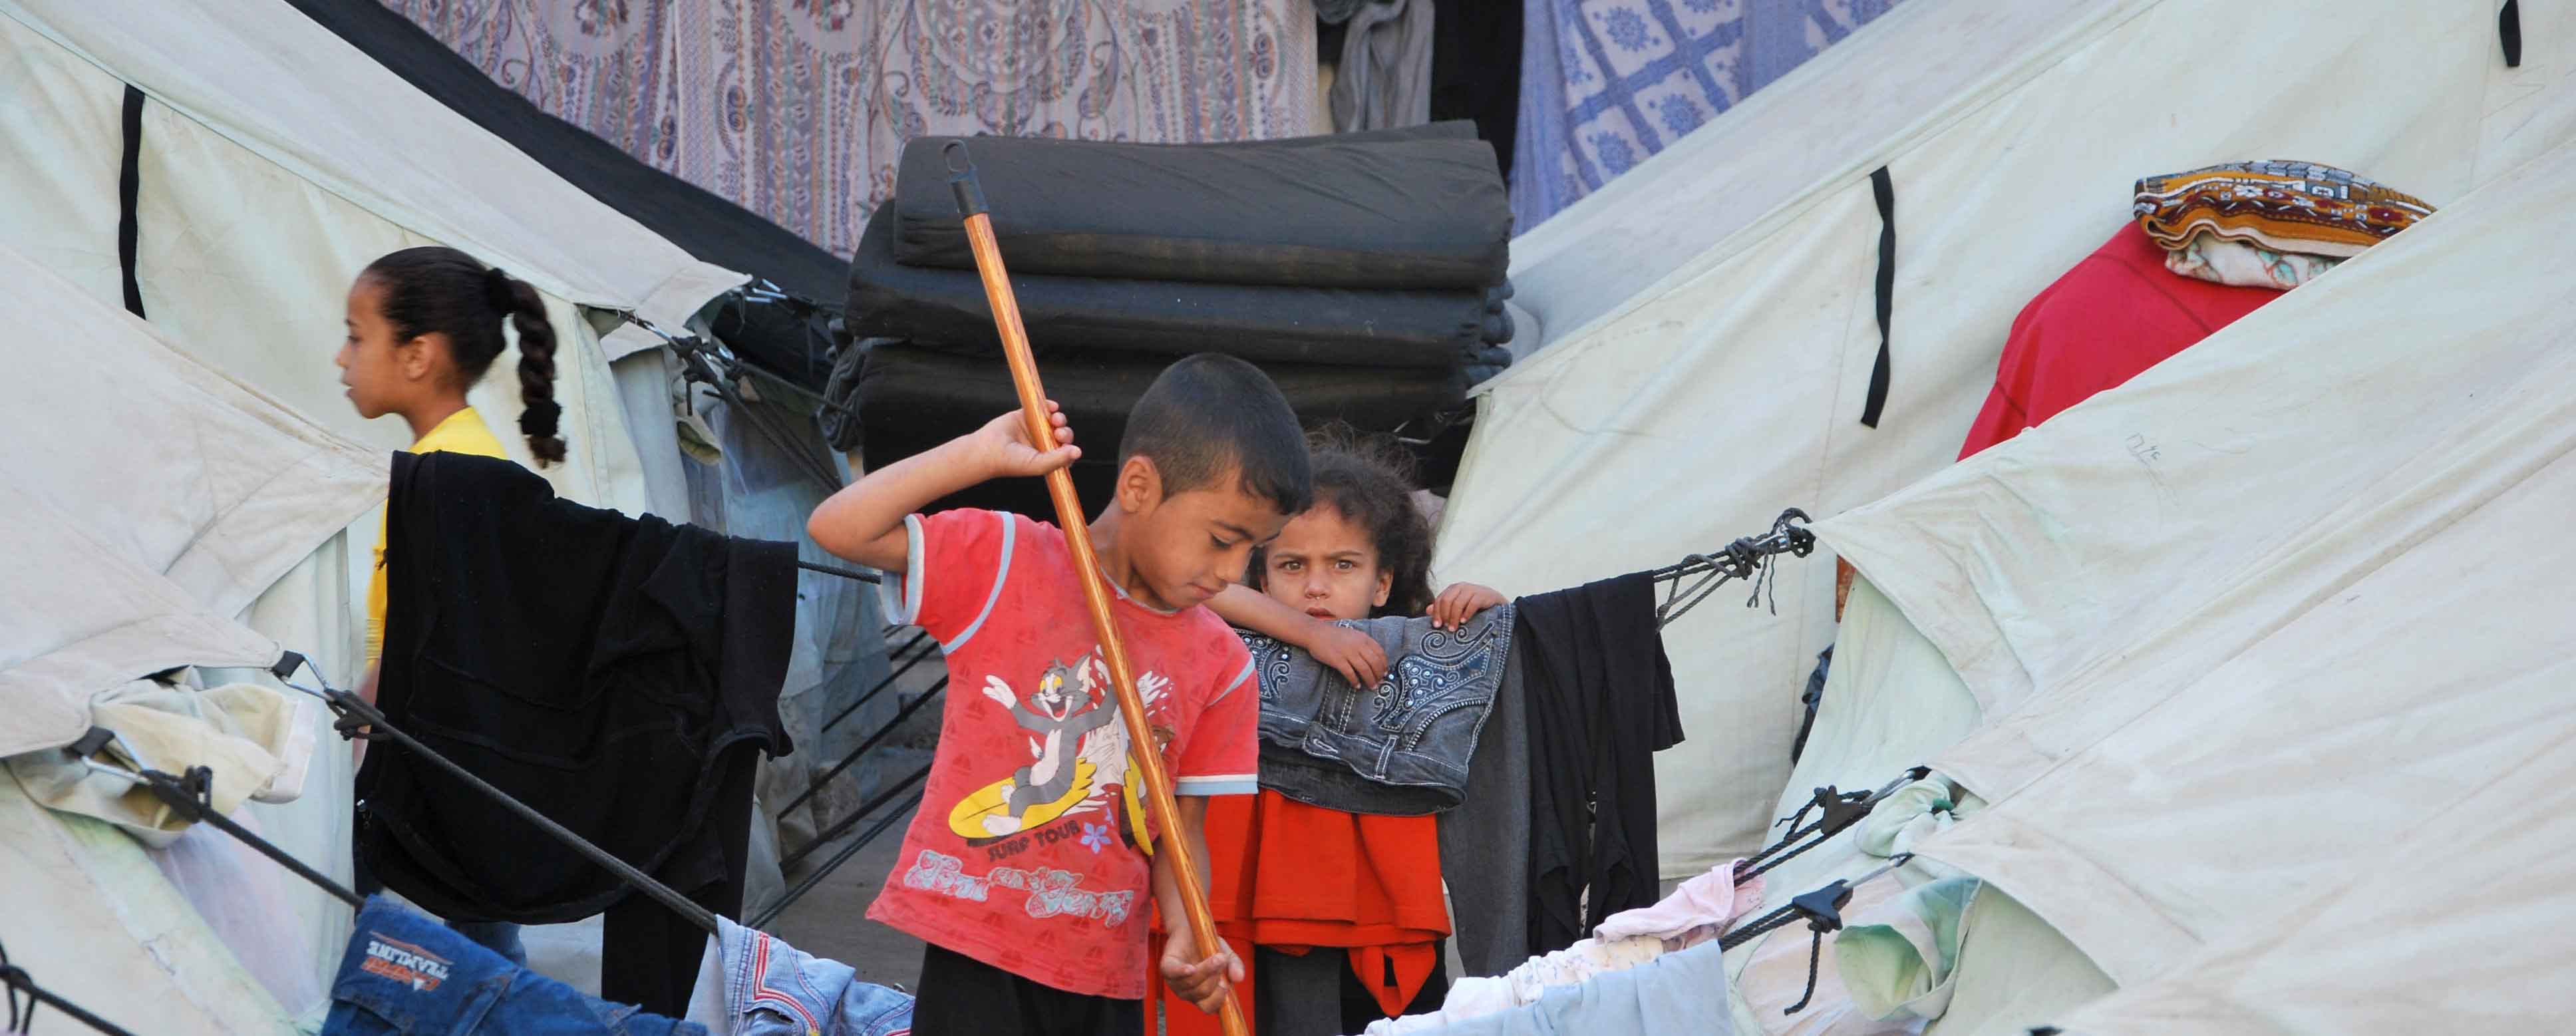 Los campos de refugiados en Siria, “escenario de la guerra”